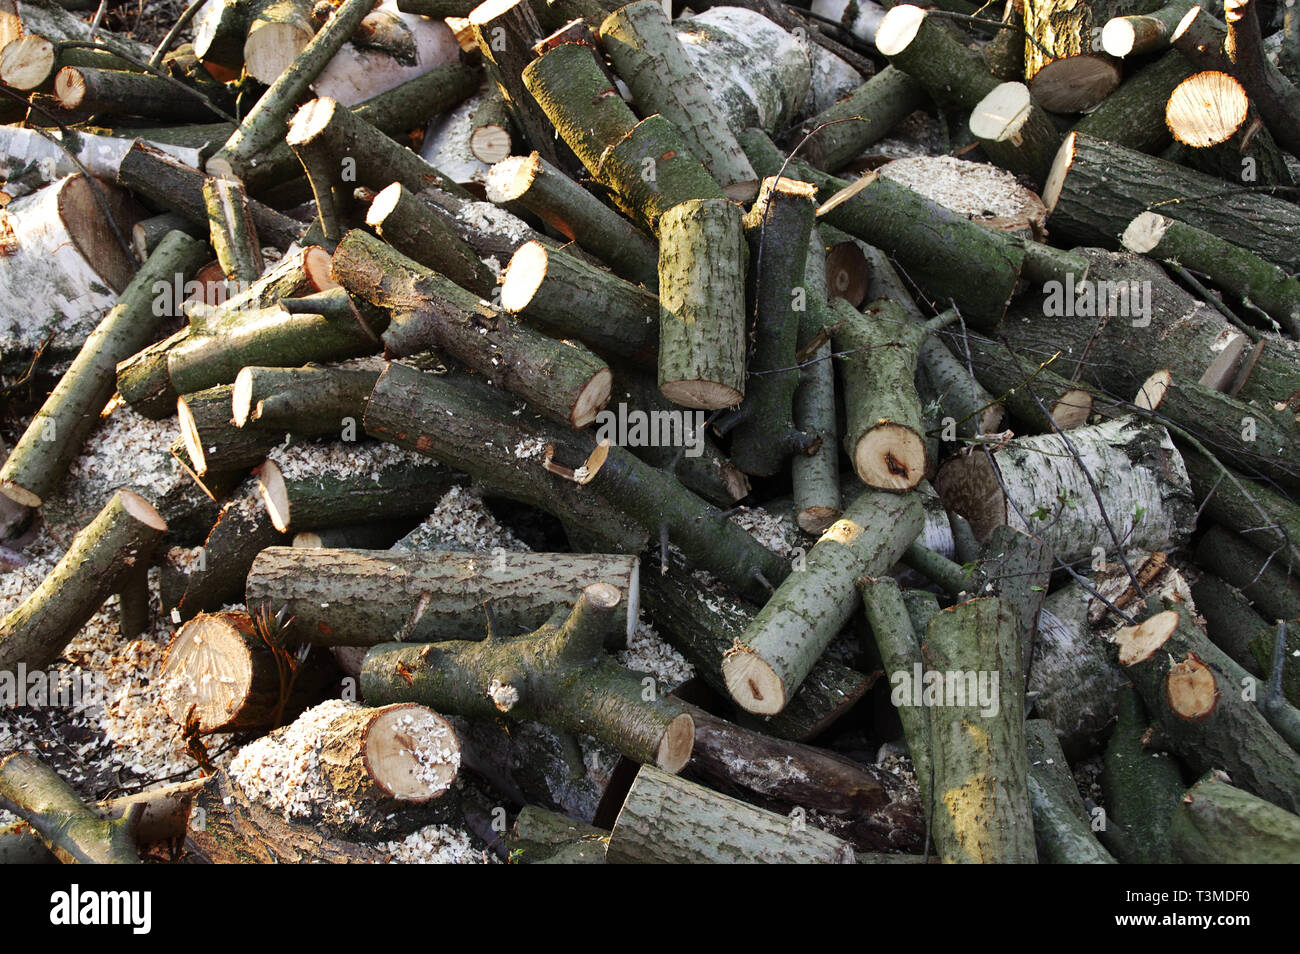 Haufen von Trunks und Stücke Holz geschnitten. Ökologie, Umwelt und Brennholz für den Winter vorbereiten. Stockfoto